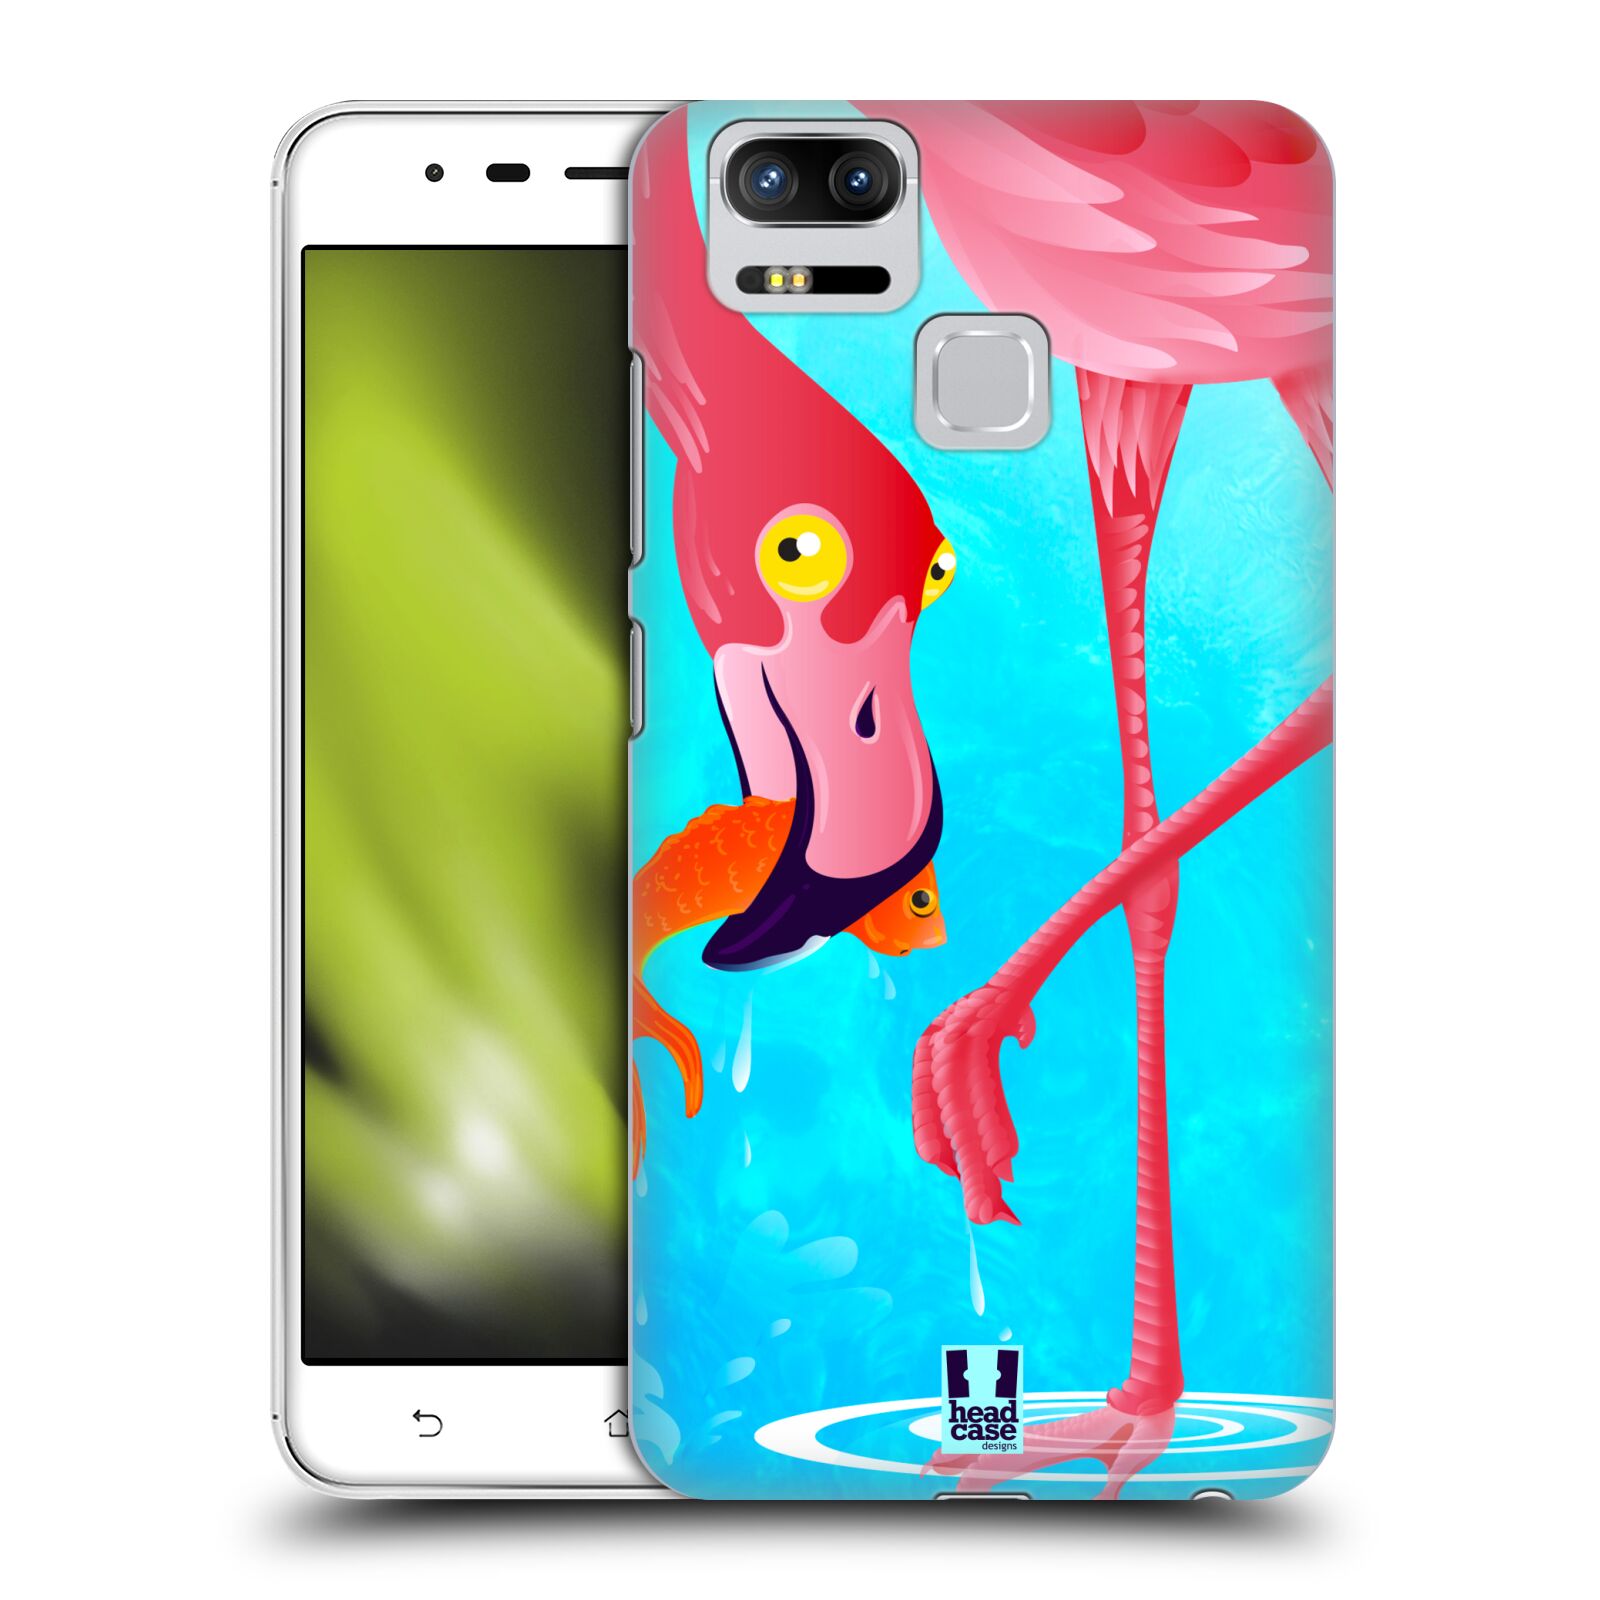 HEAD CASE plastový obal na mobil Asus Zenfone 3 Zoom ZE553KL vzor dlouhé nohy kreslená zvířátka plameňák